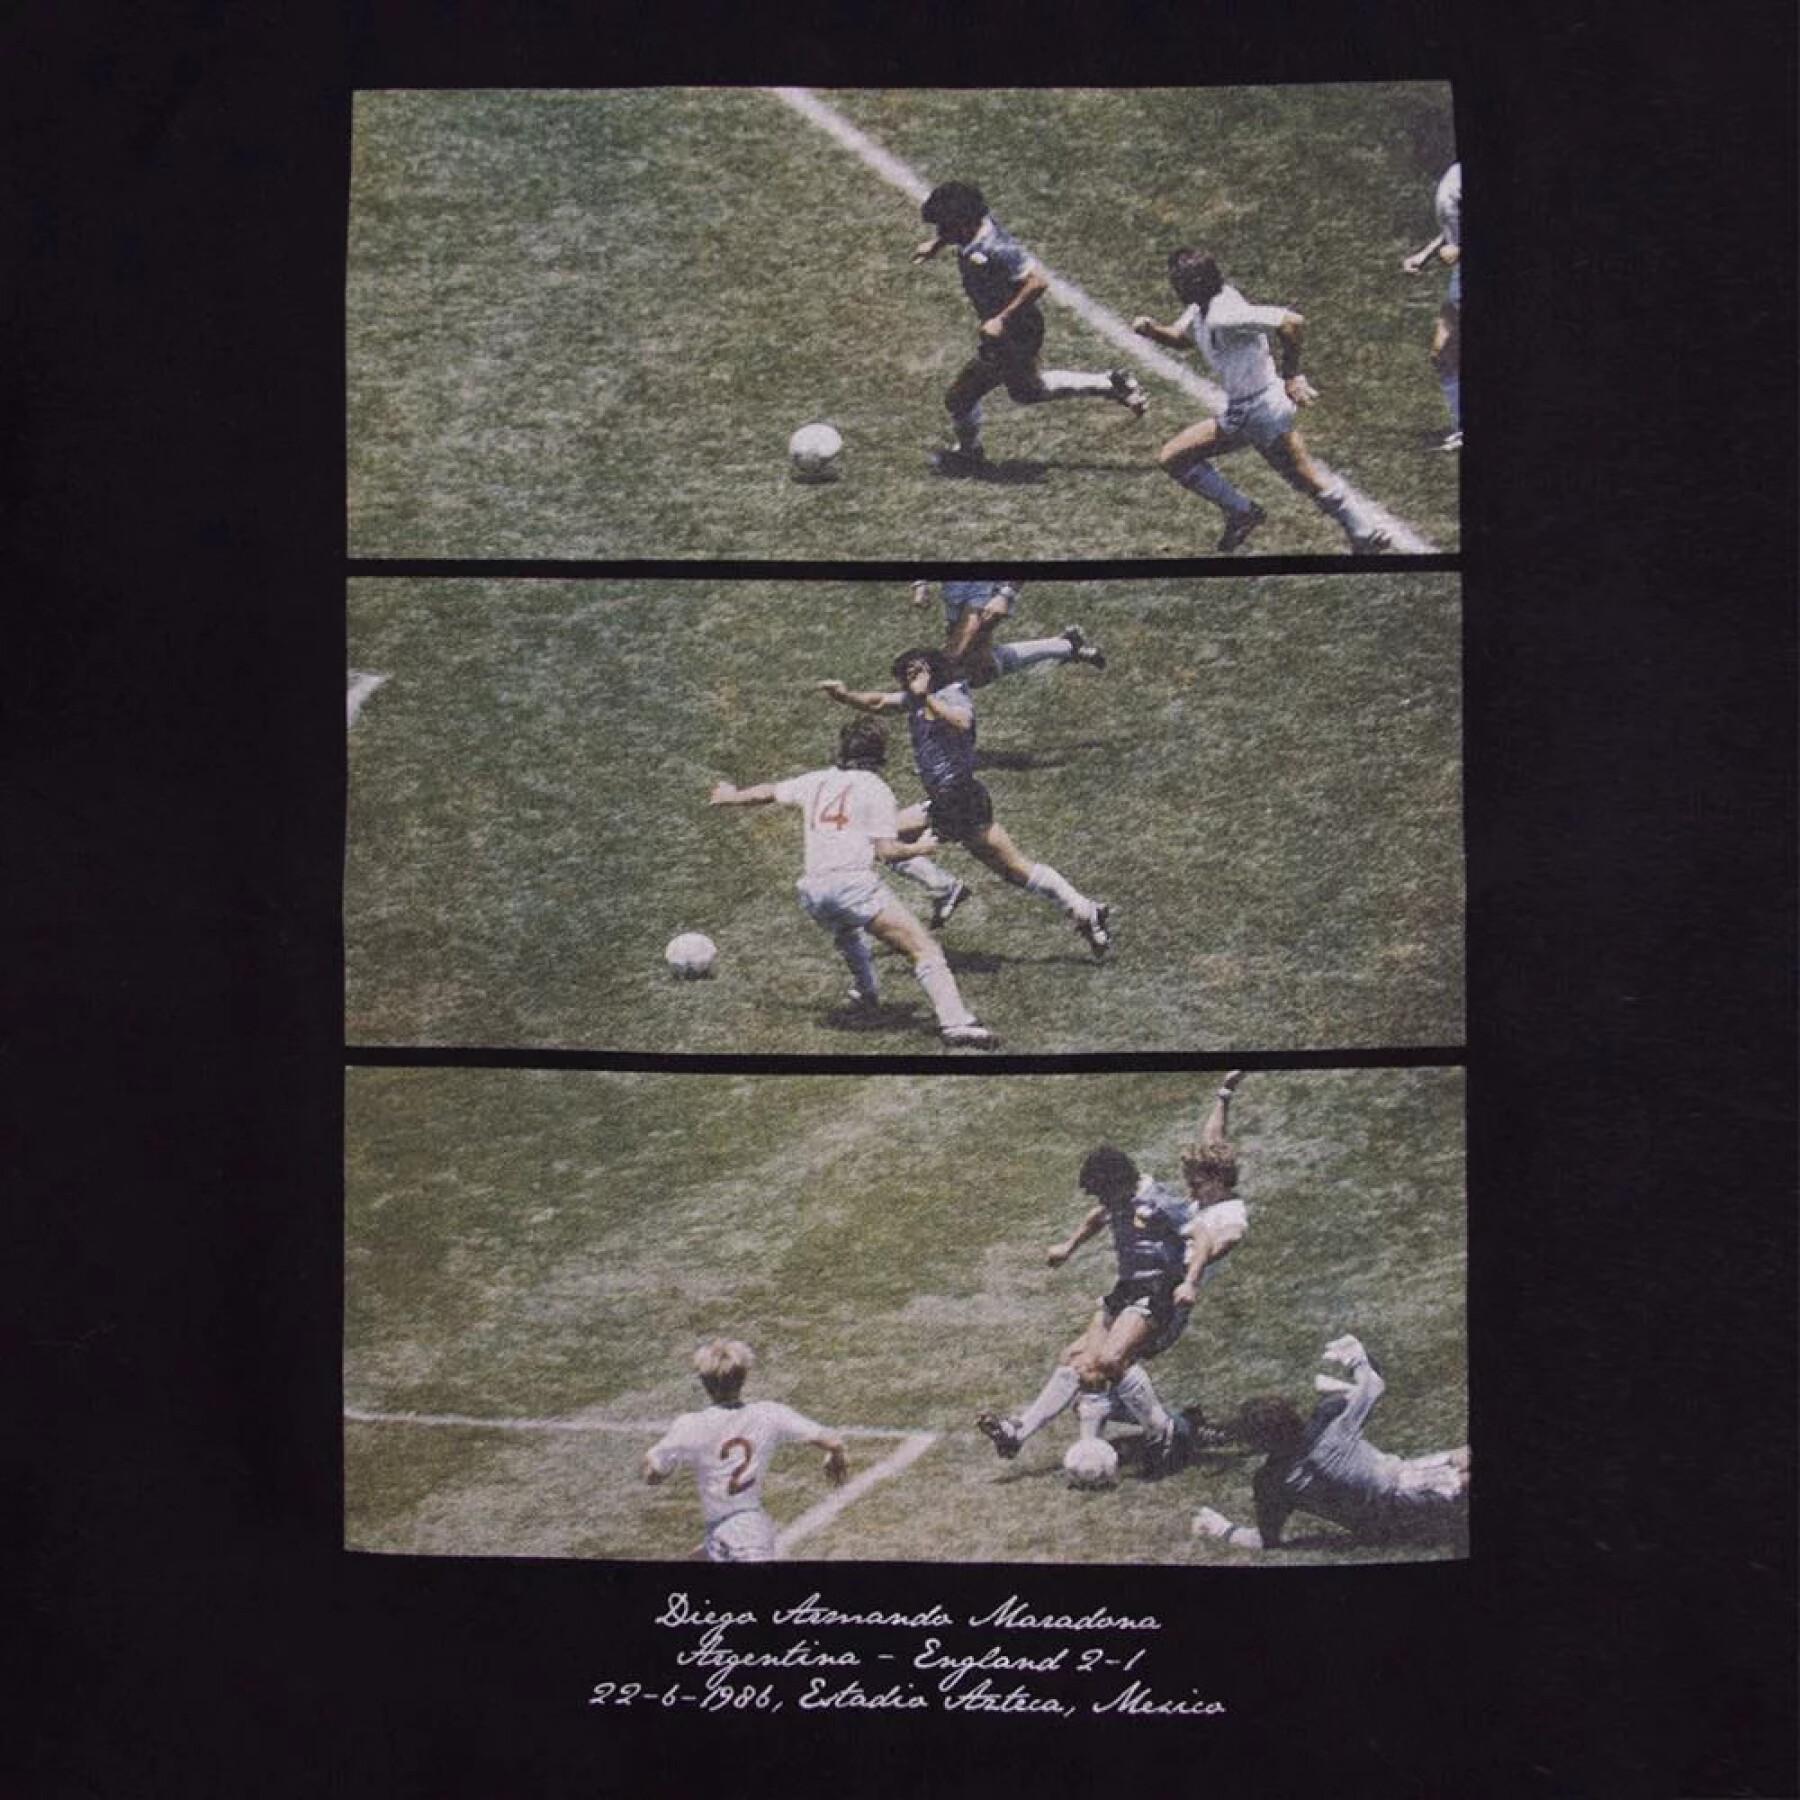 T-shirt Copa Maradona Solo Goal 1986